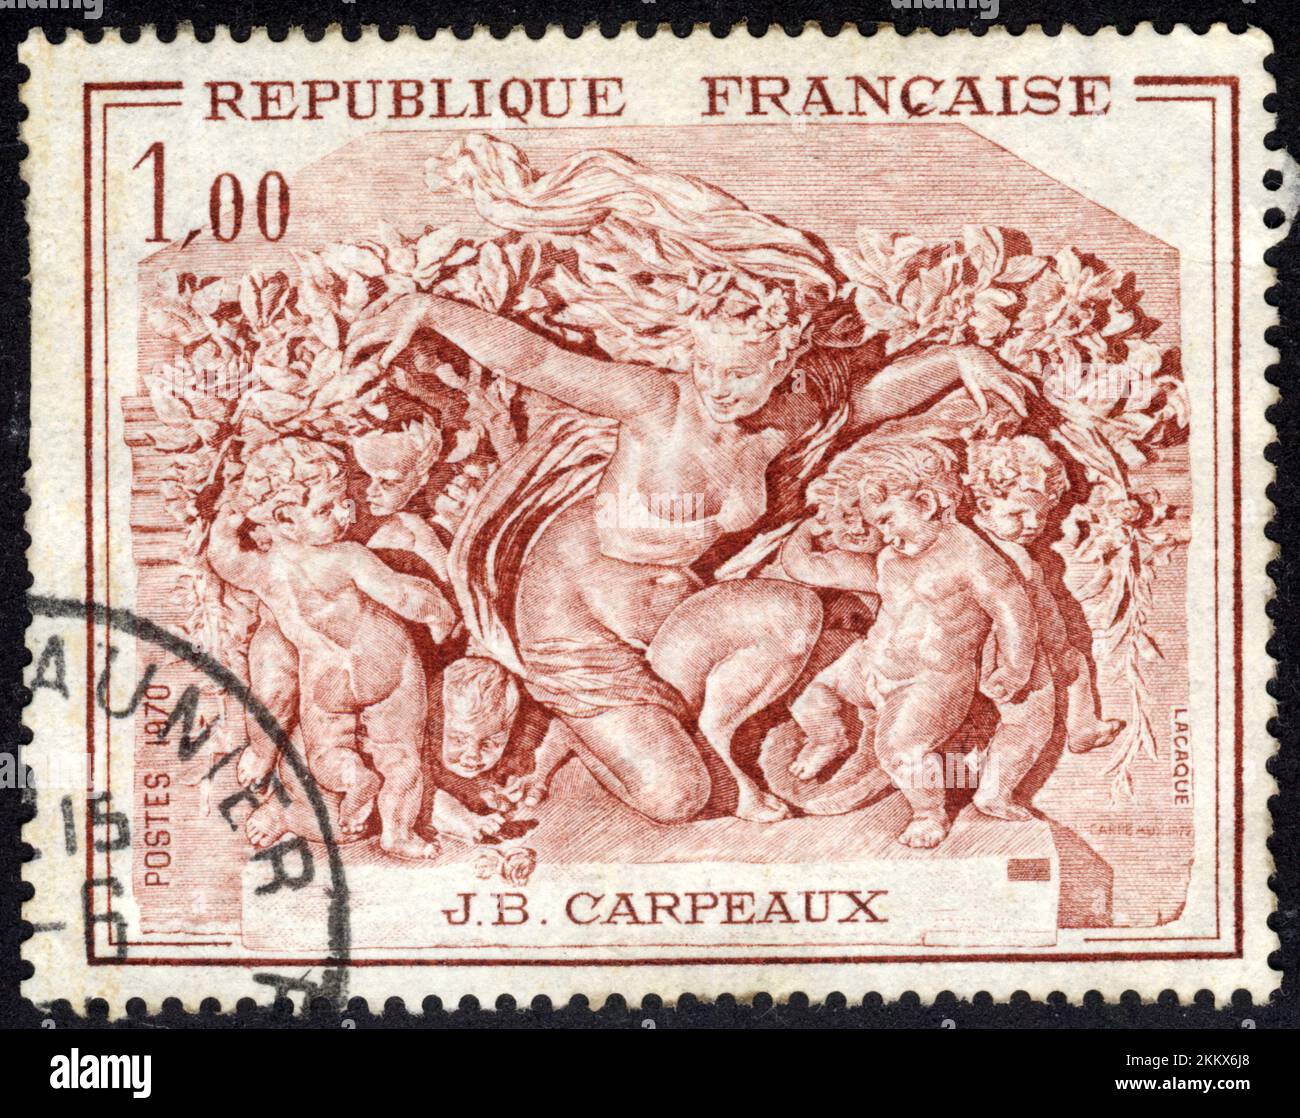 TIMBRO OBLITERE J.B. CARPEAUX.REPUBLIQUE FRANCAISE.POSTES 1970.1,00 Foto Stock